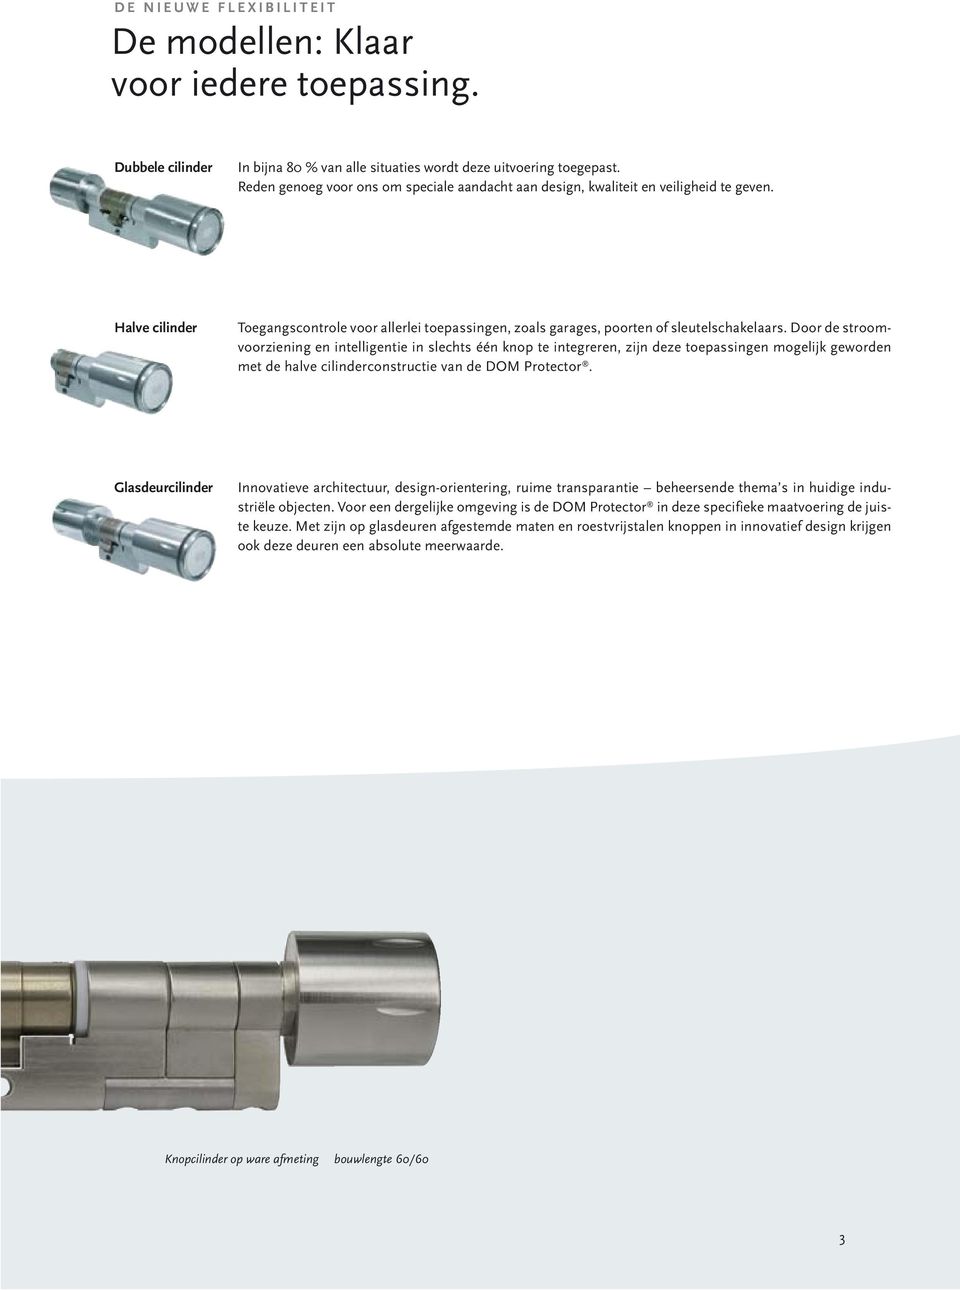 Door de stroomvoorziening en intelligentie in slechts één knop te integreren, zijn deze toepassingen mogelijk geworden met de halve cilinderconstructie van de DOM Protector.